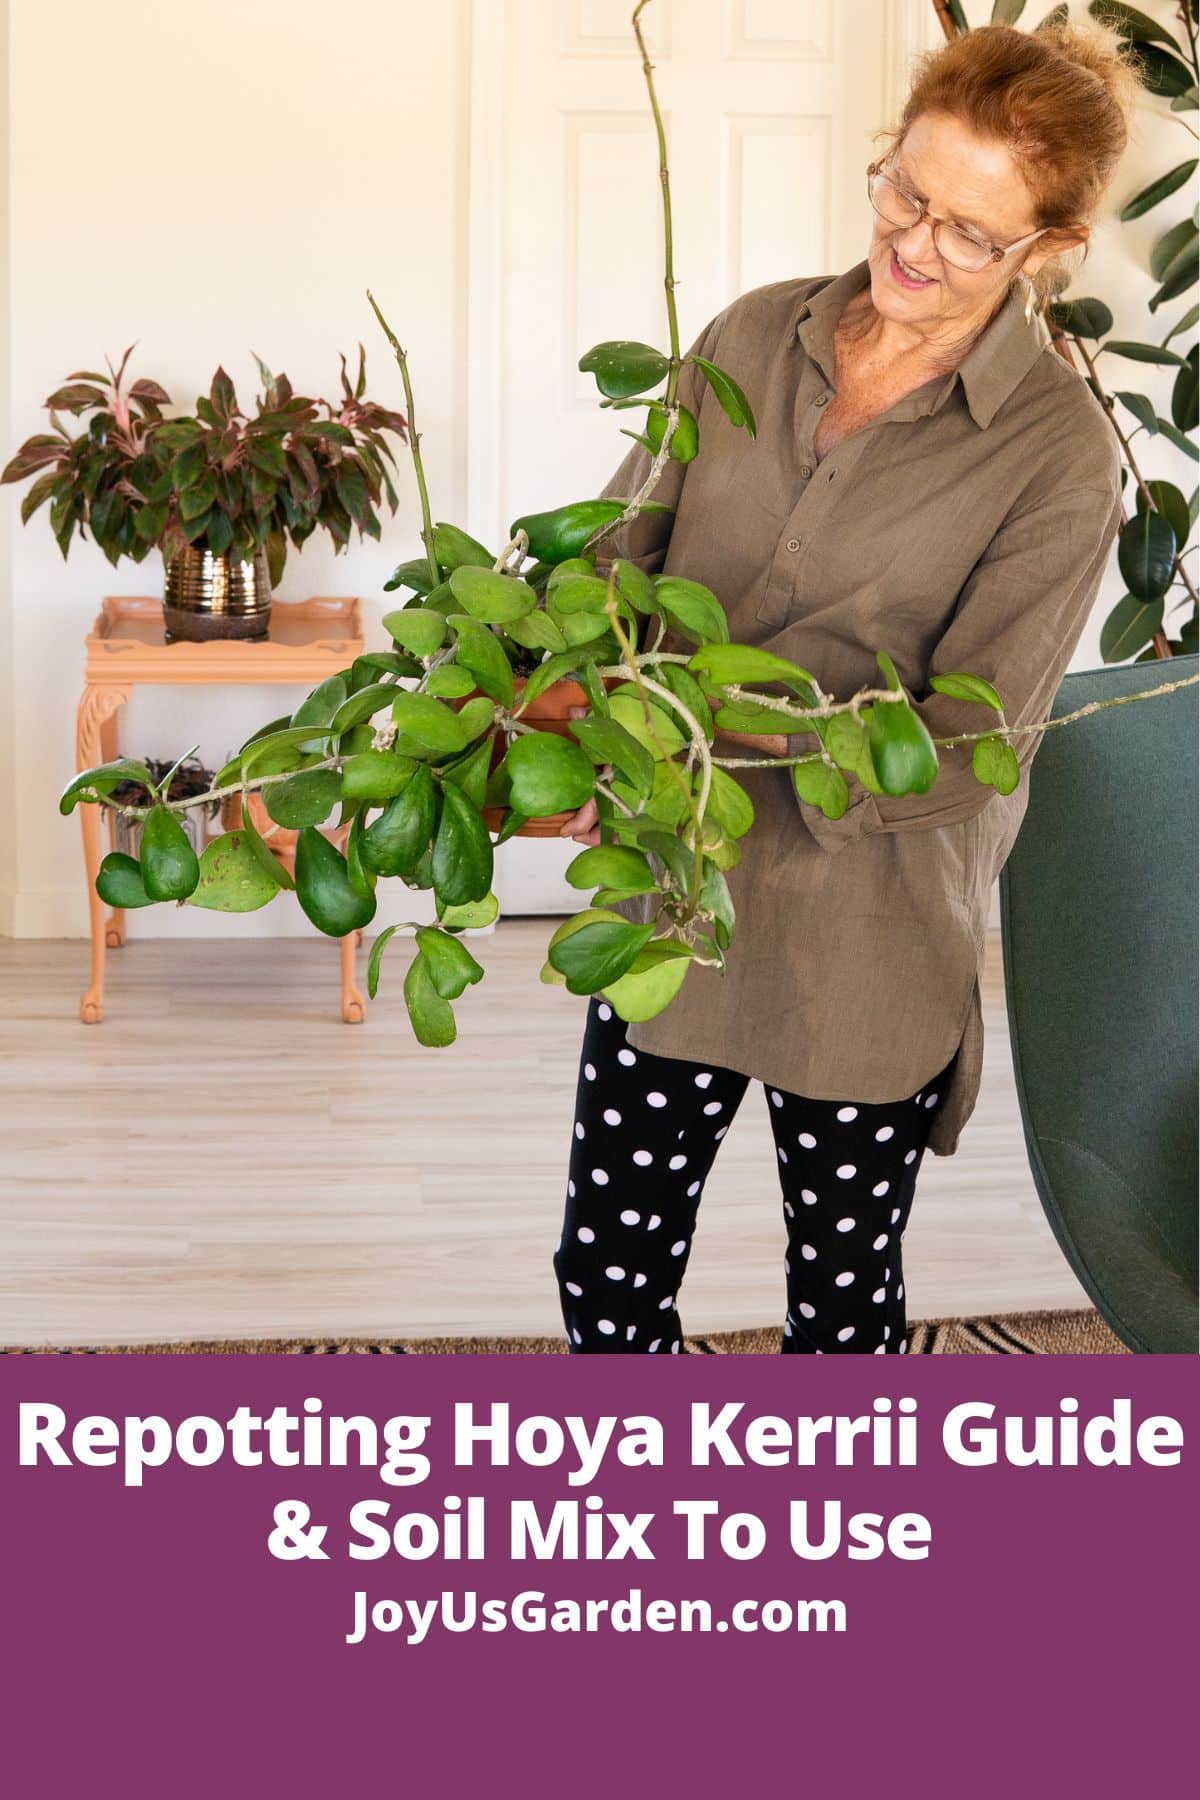  Руководство по пересадке Hoya Kerrii + почвенная смесь, которую следует использовать